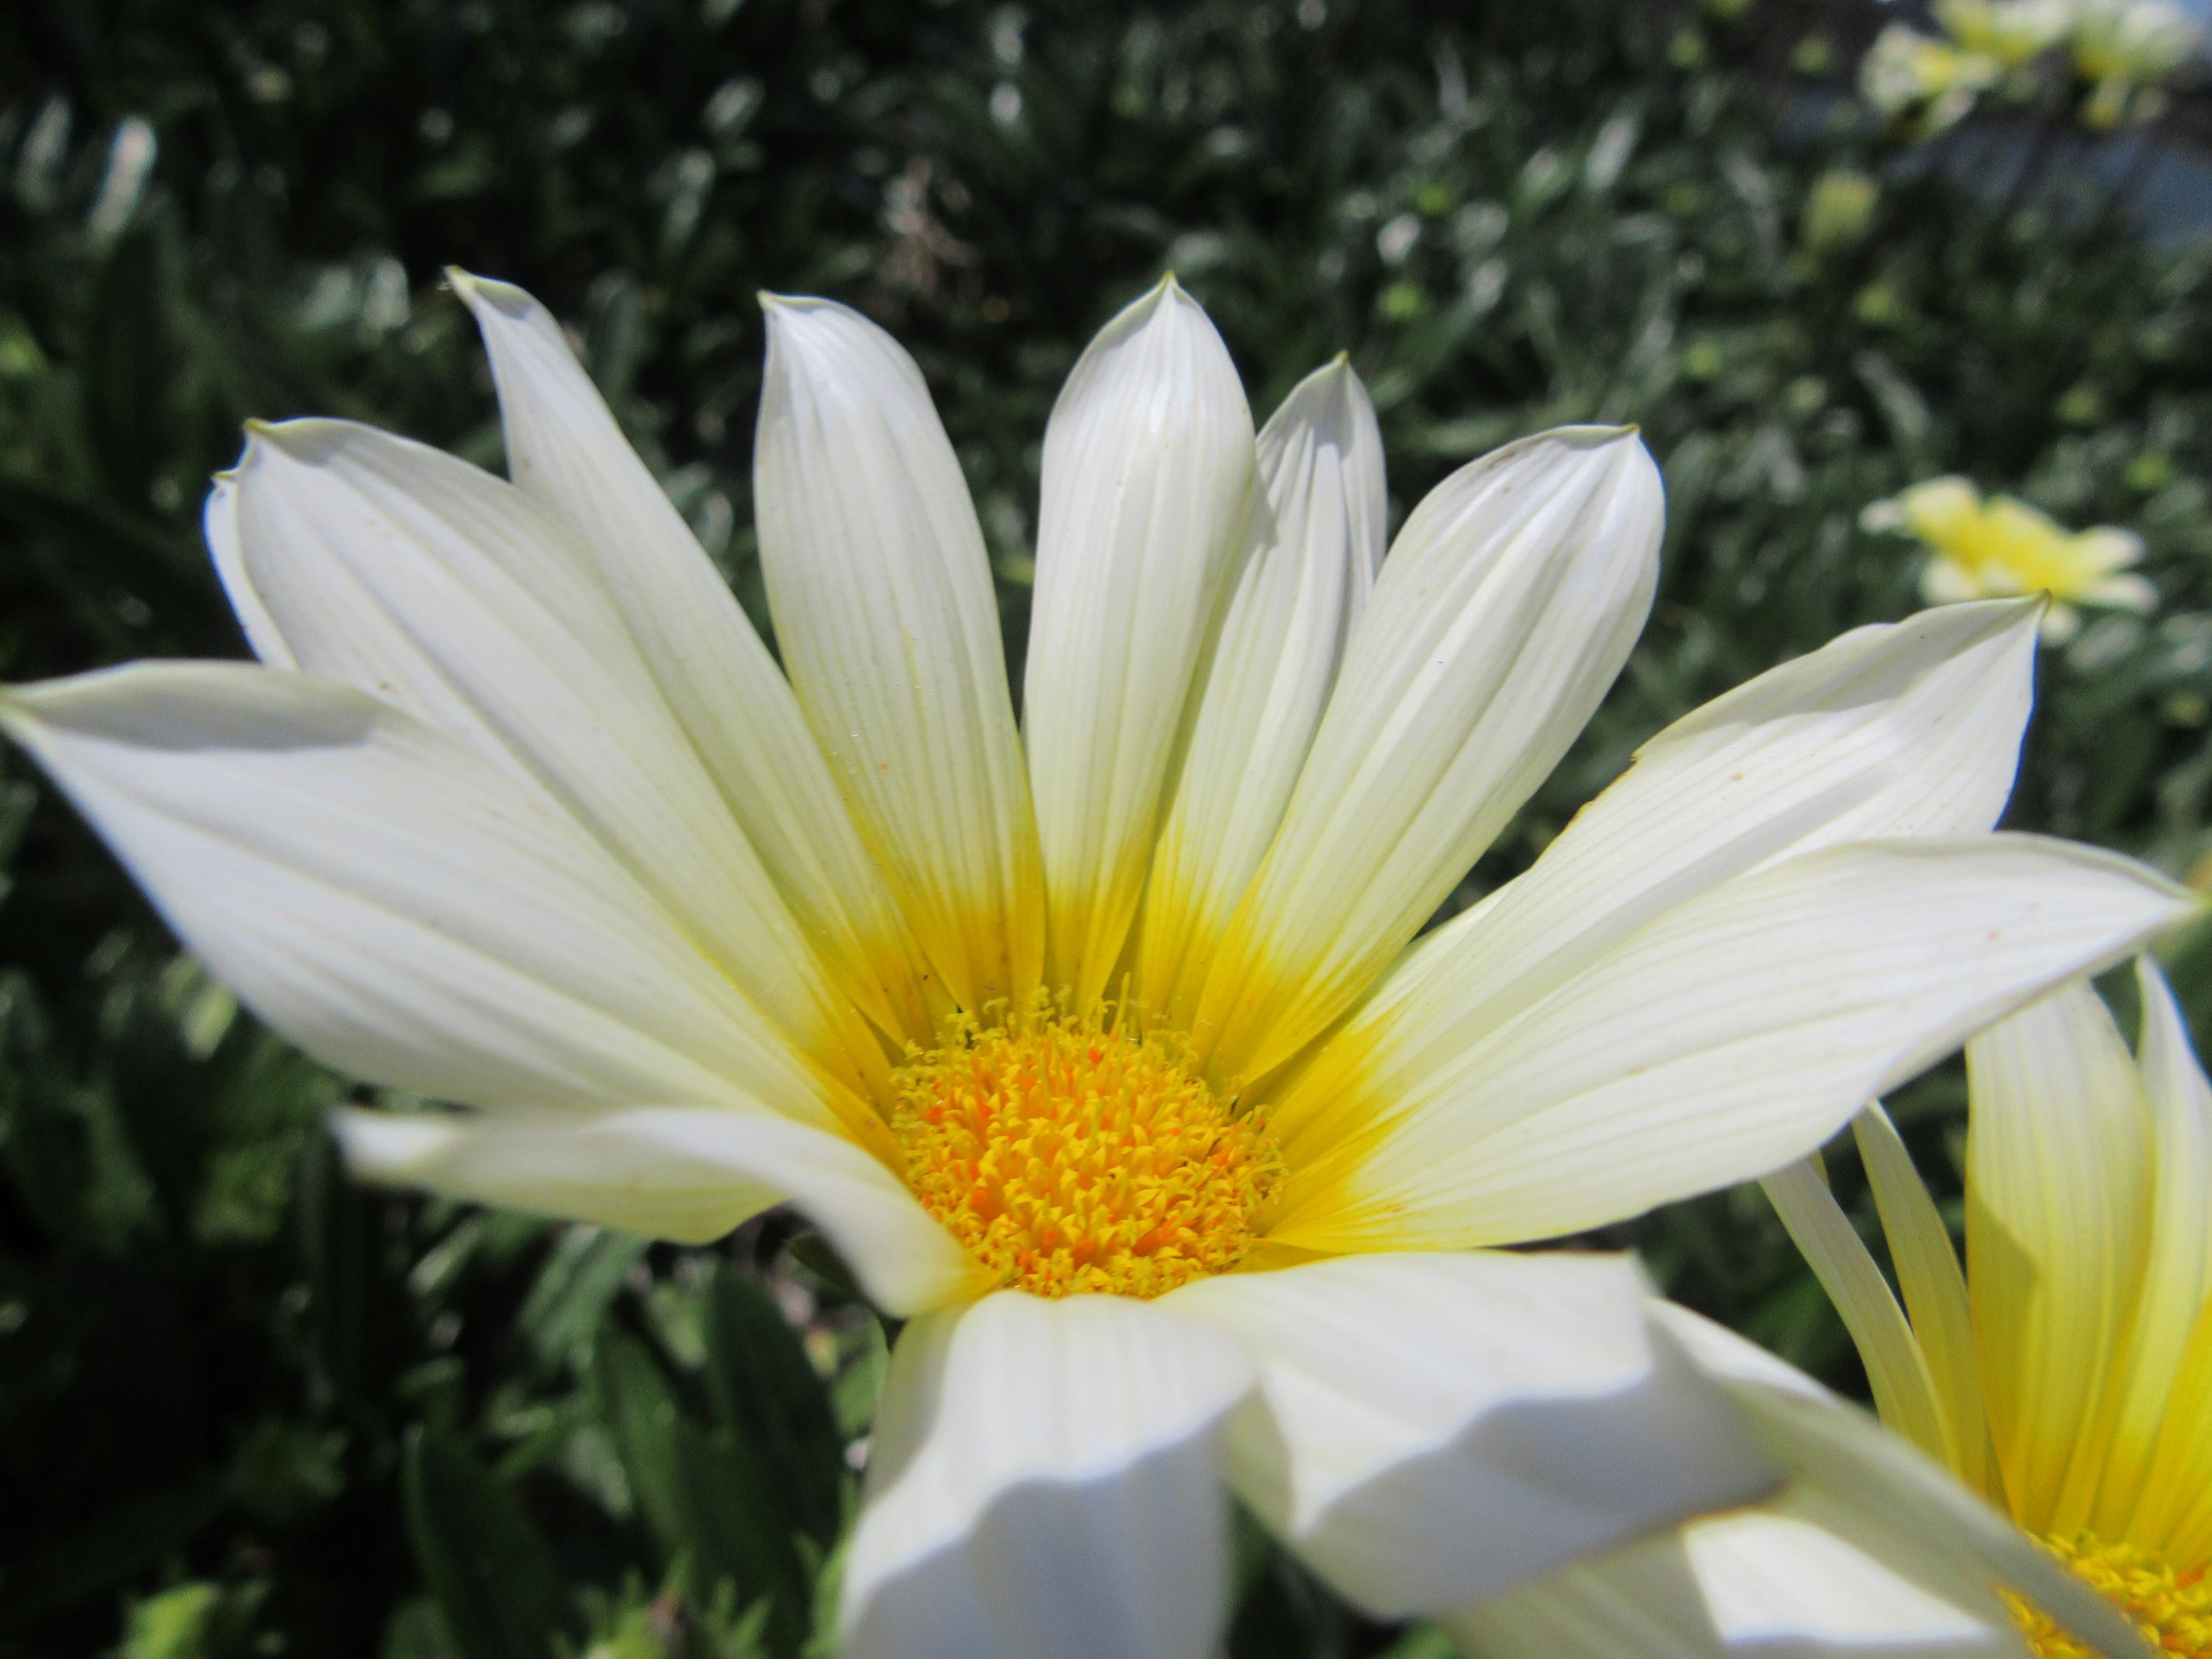 長崎県西彼杵郡長与町で近くから撮影した、白いガザニアの花。